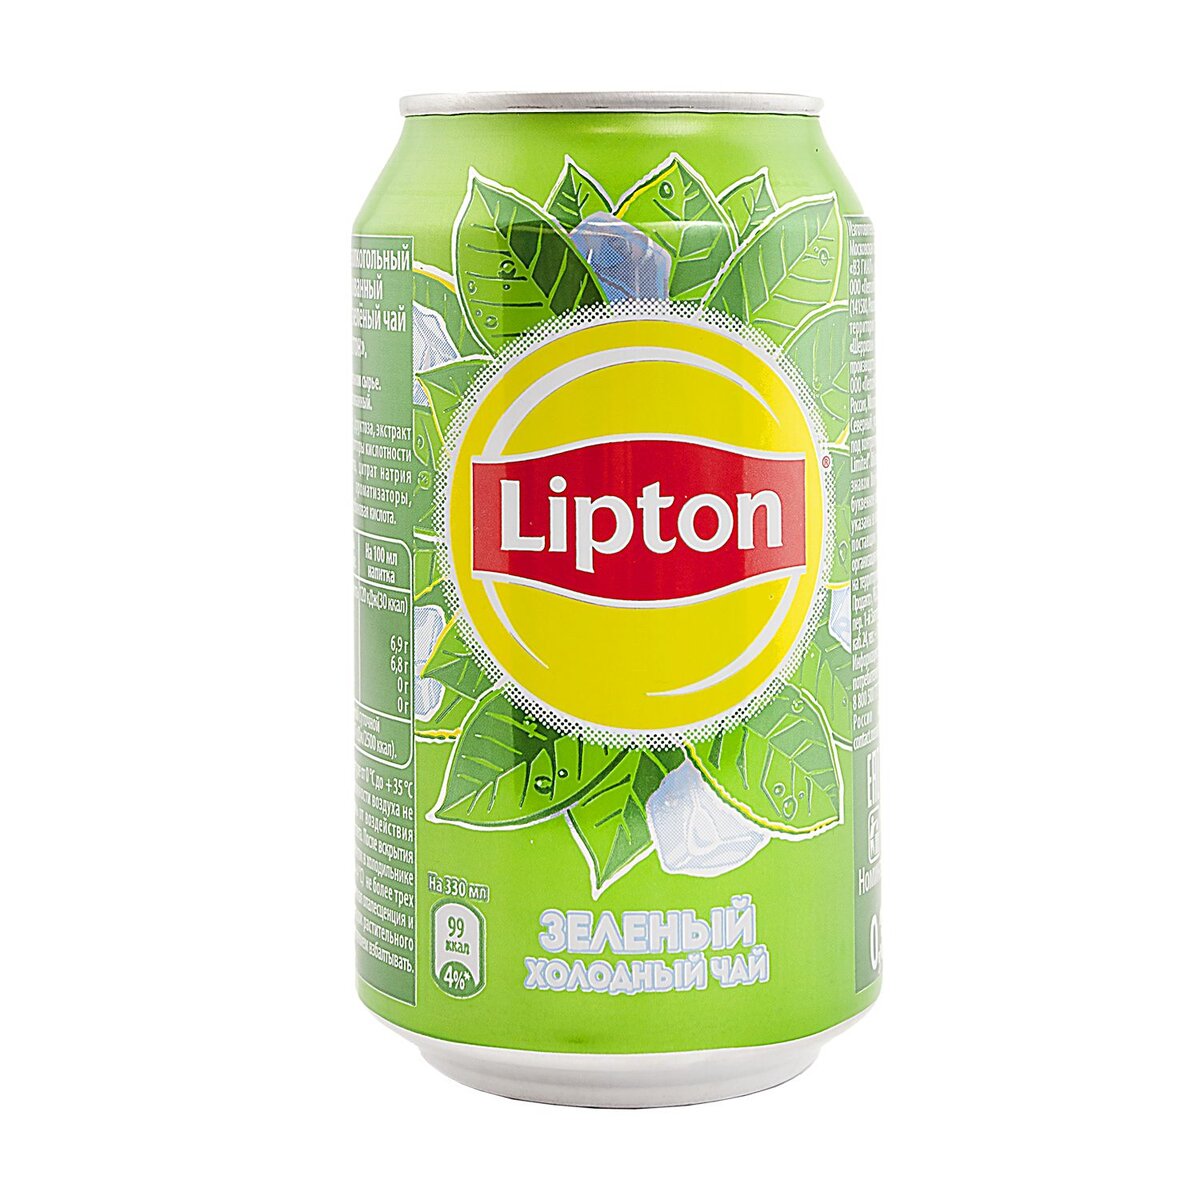 Lipton 330мл. Липтон зелёный холодный 250 мл. Напиток Липтон зеленый чай. Напиток Липтон зеленый.